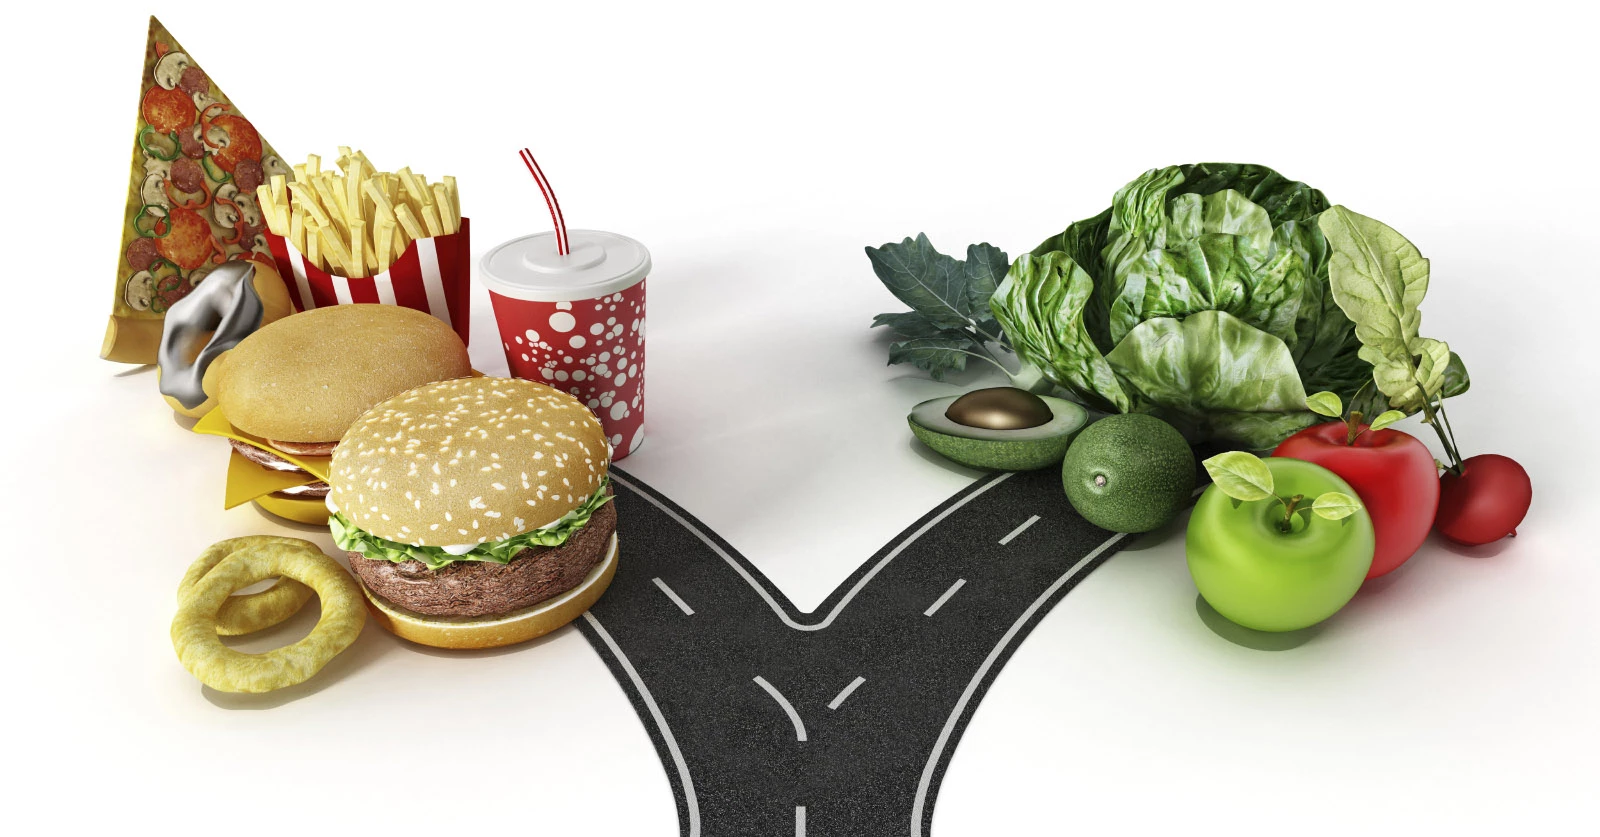 1697-junk-food-vs-healthy-food.jpg